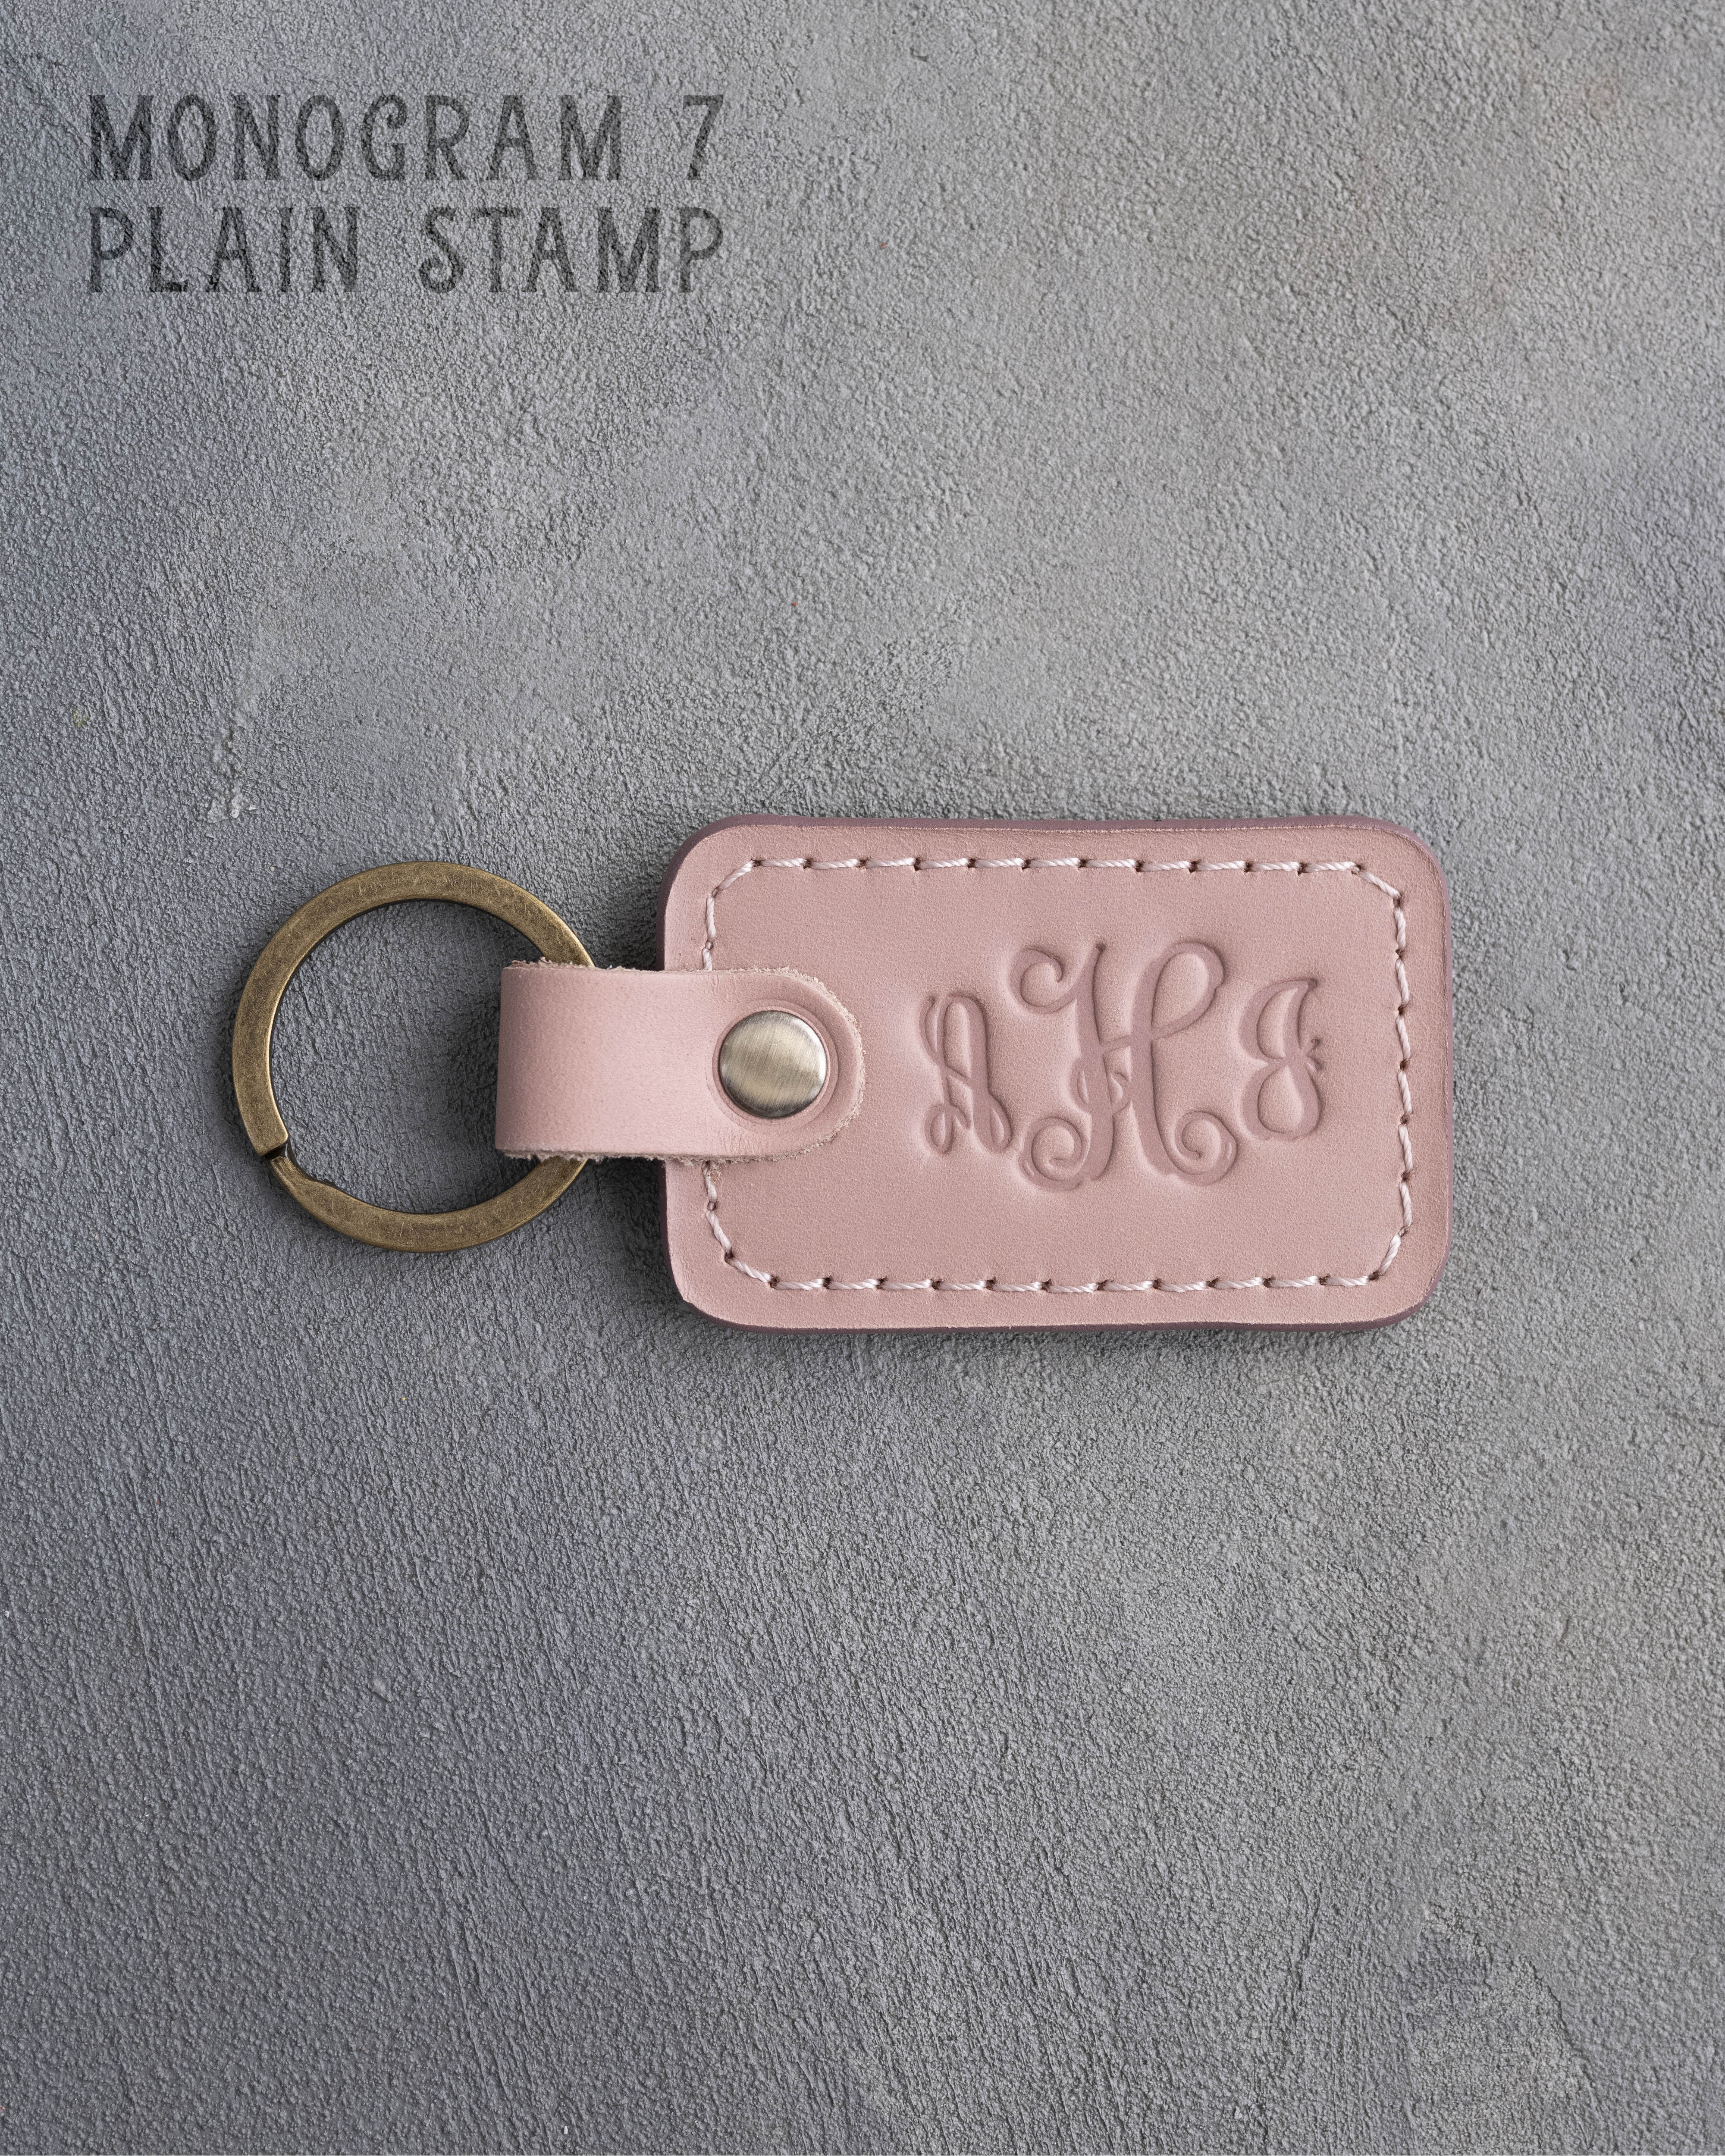 Vine Monogram Keychain in Blush Leather